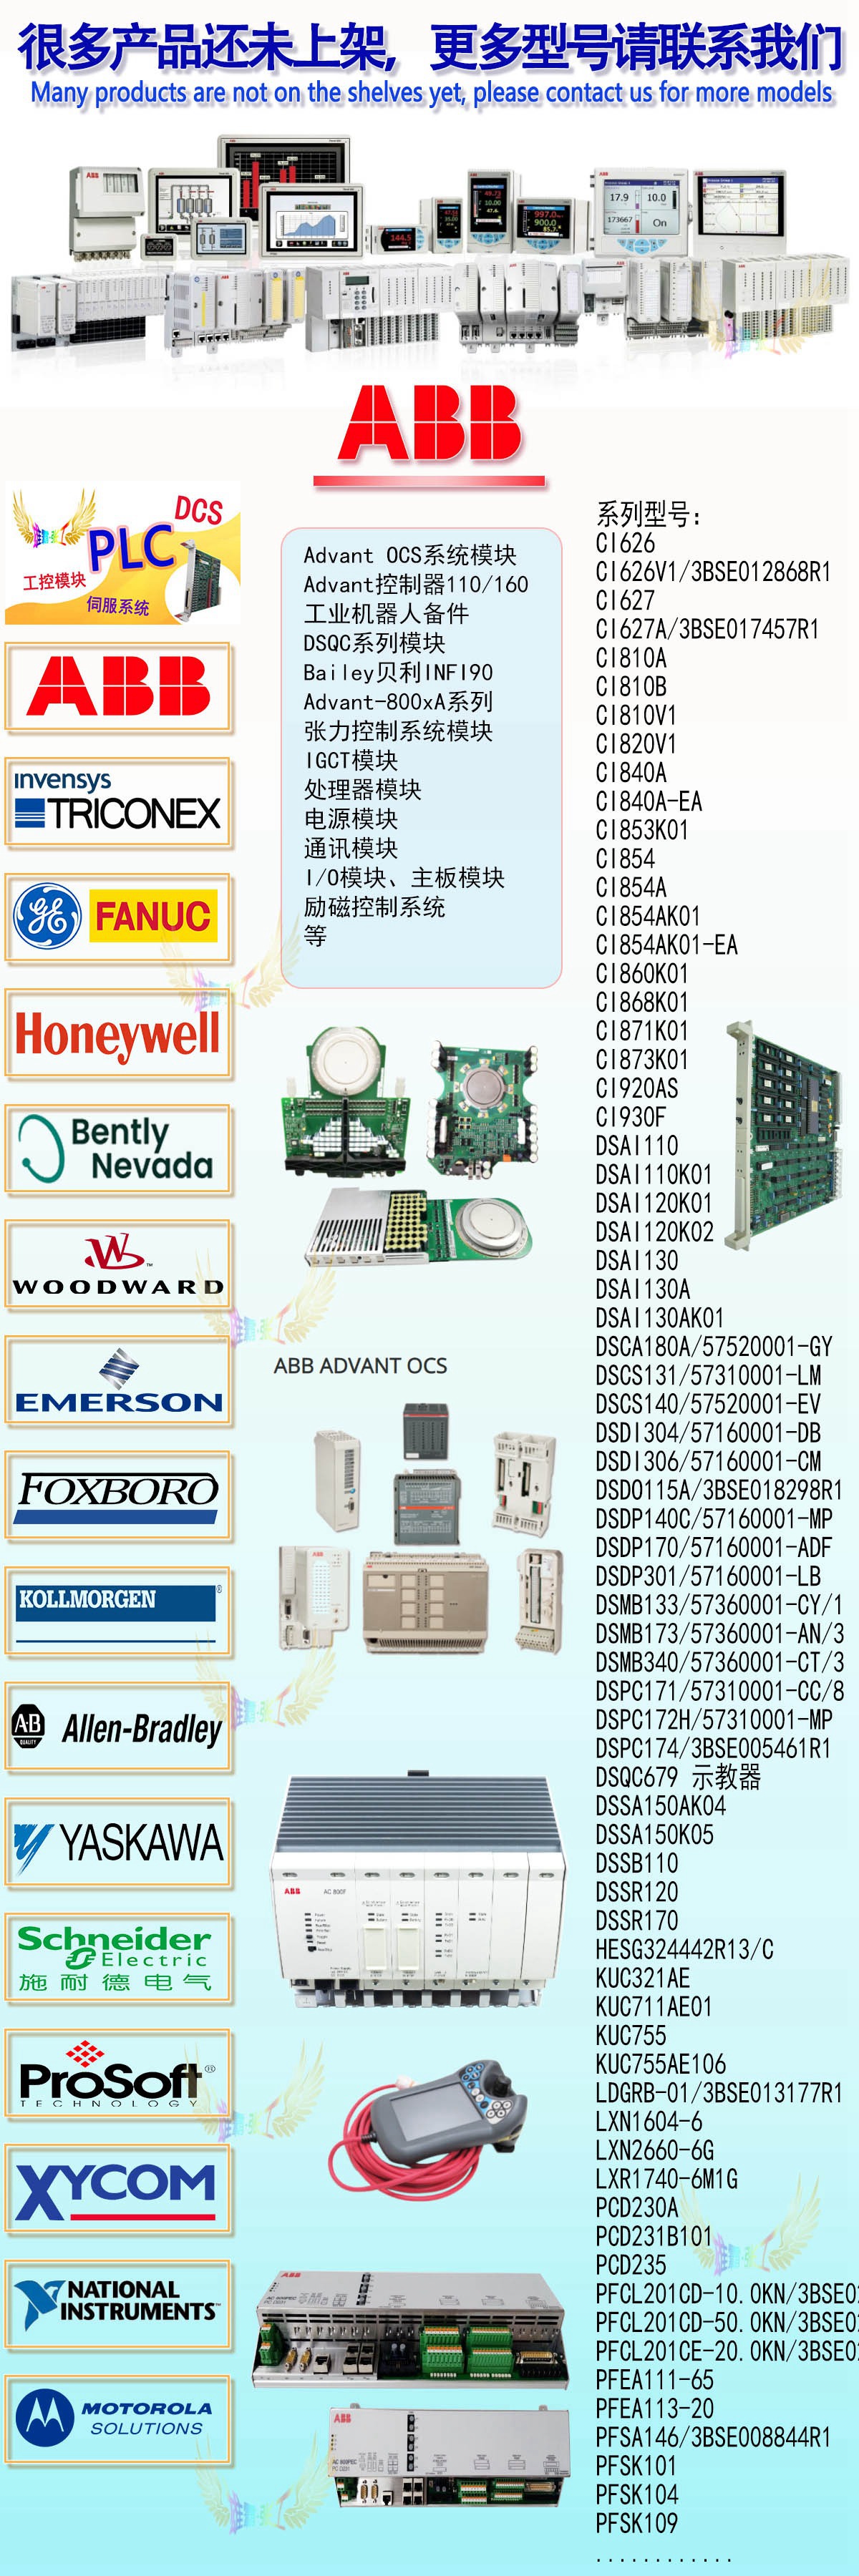 霍尼韦尔CC-TCNT01 输入输出控制器51308307-175 